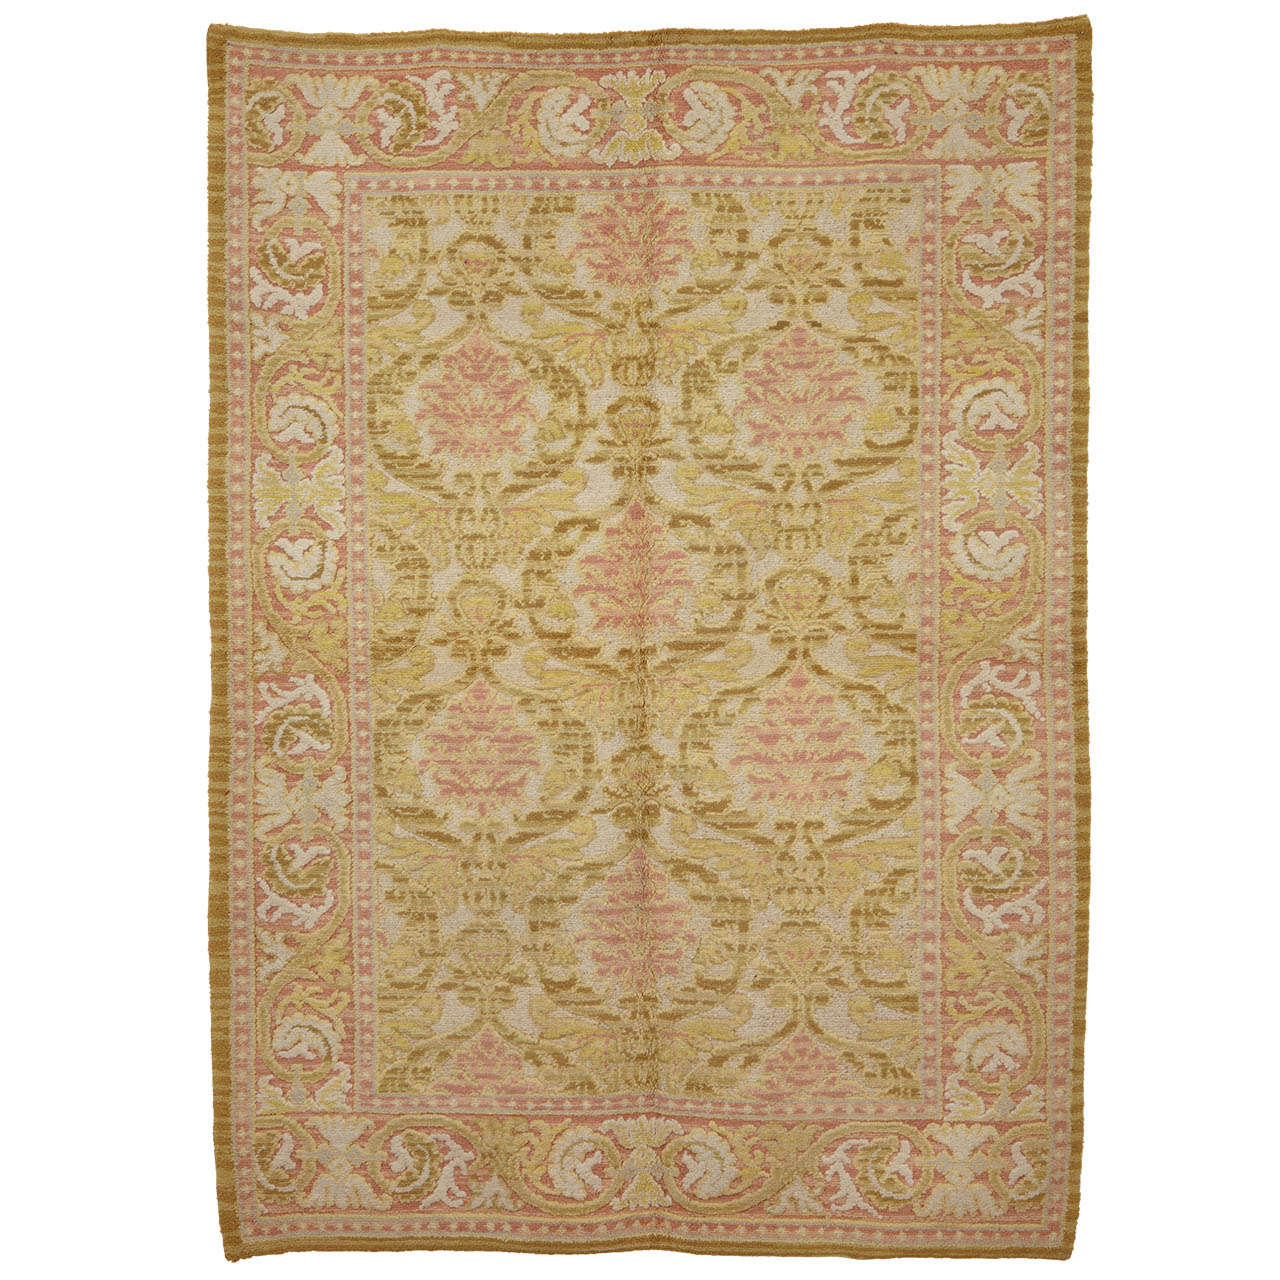 Spanischer Cuenca-Teppich im Vintage-Stil mit Palmette-Design aus der Renaissance